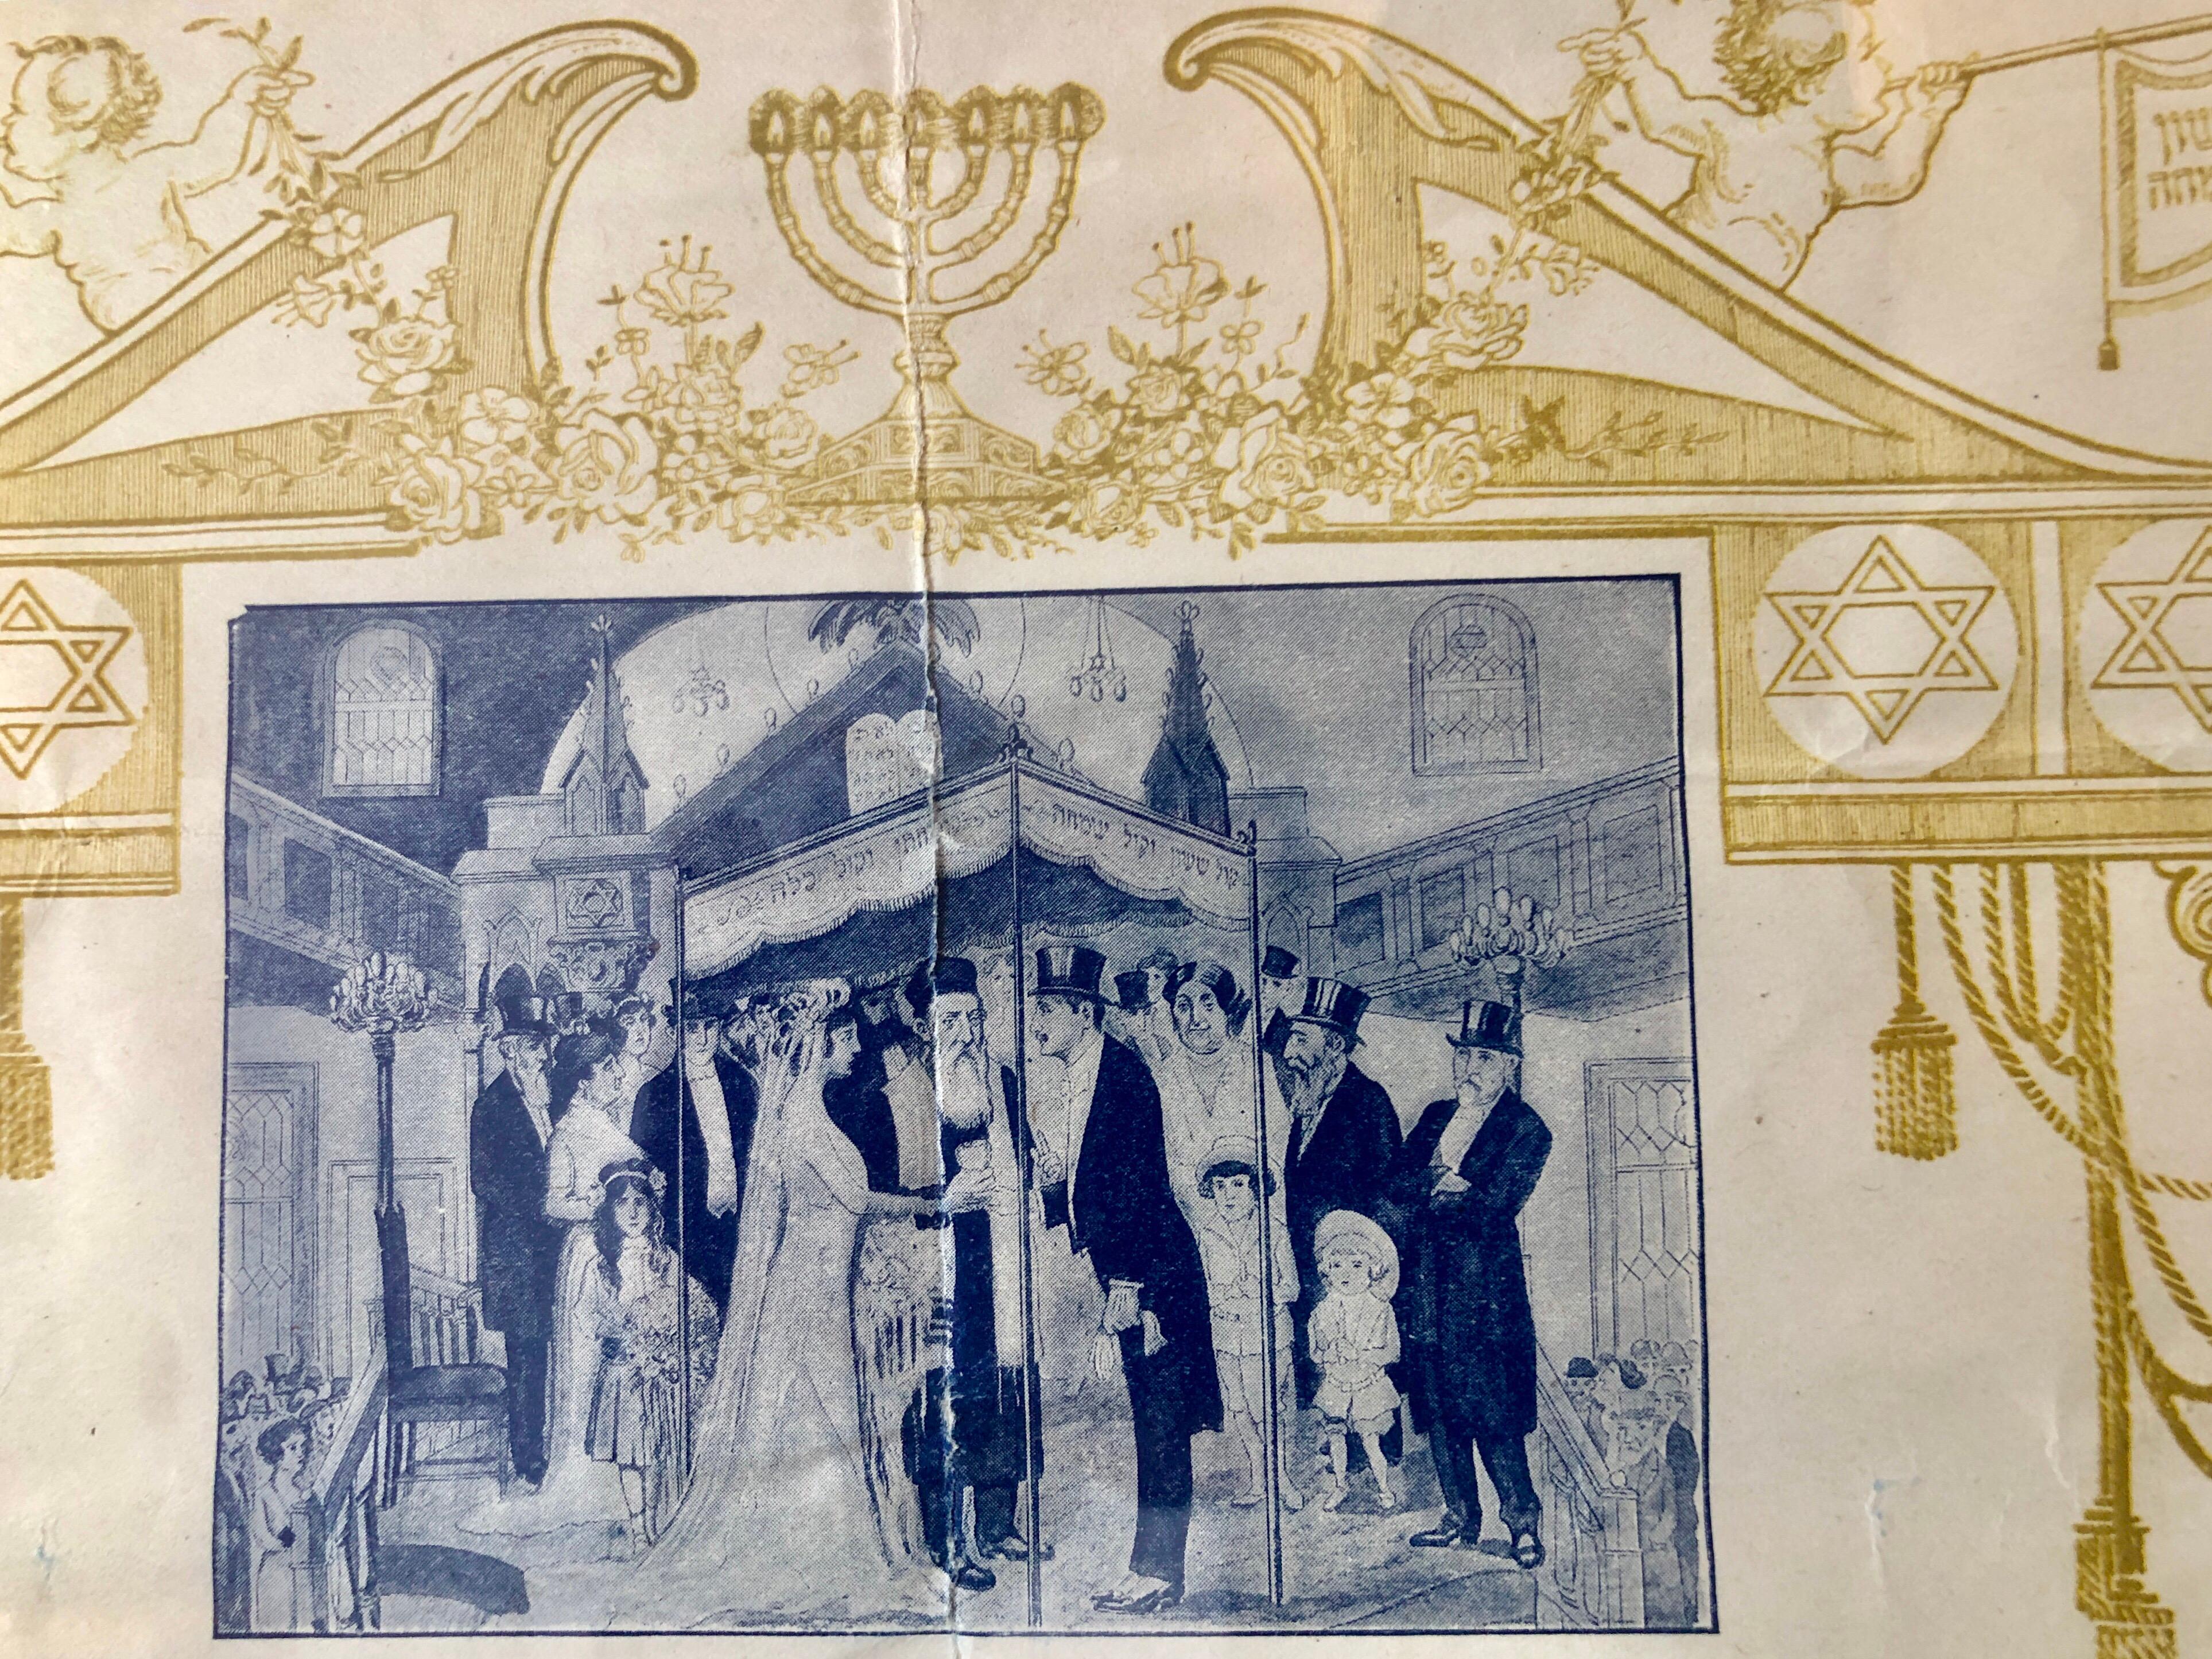 Seltener 1915 Frühes 20. Jahrhundert Ketubah Hand geschriebener Text NYC Hebrew Publishing Co., NYC Hebrew Publishing.  (Gotisch), Art, von Leon Israel (Lola)